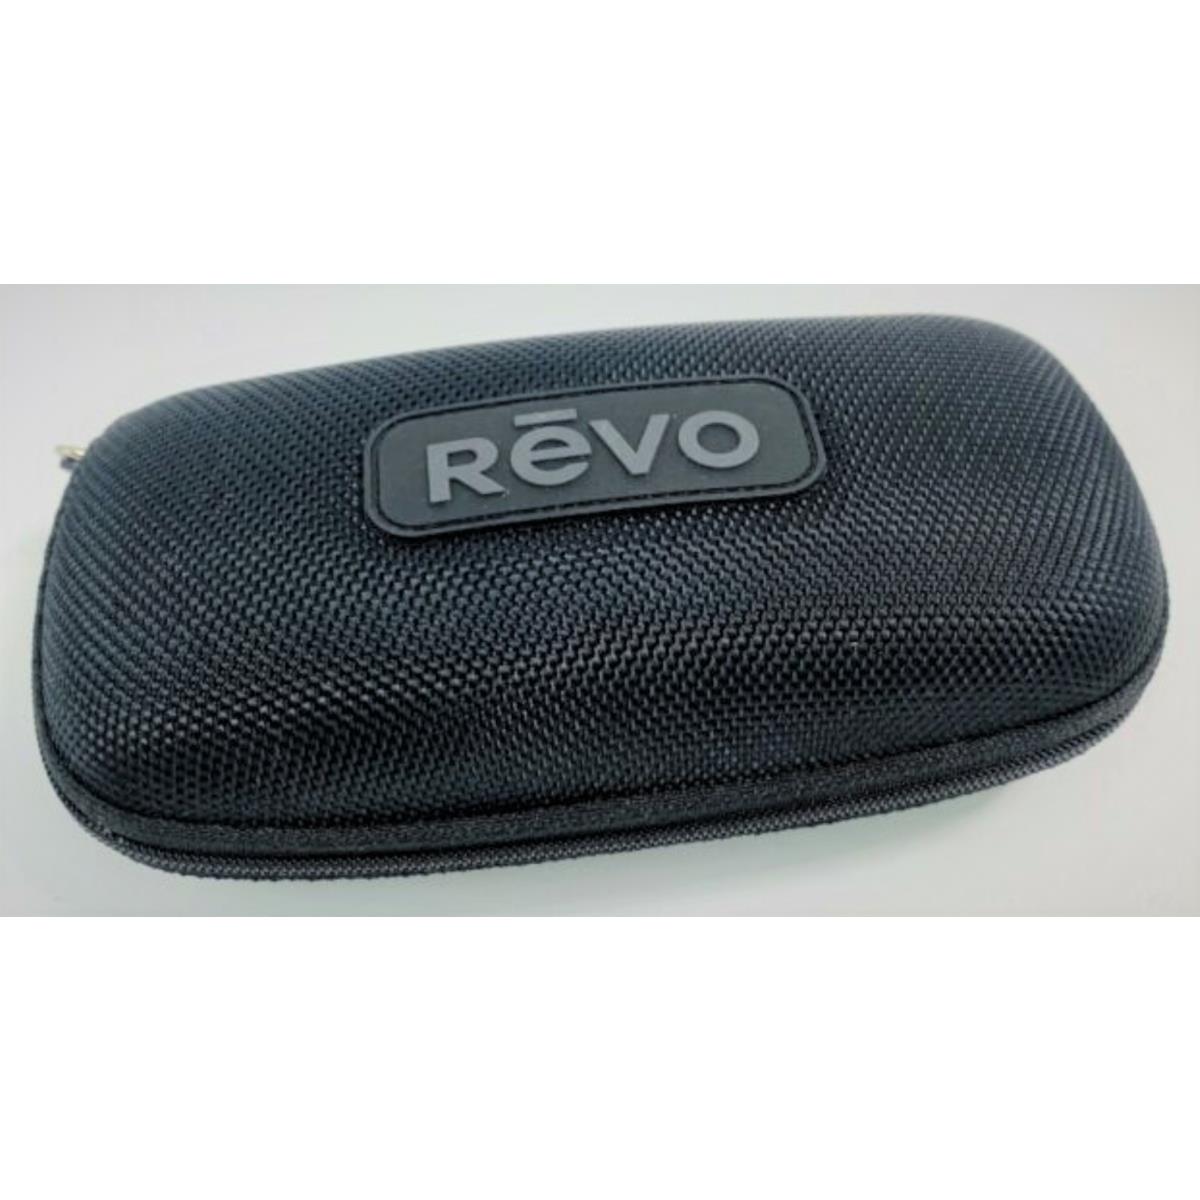 Revo sunglasses Bear Grylls Caper - Matte Black Frame, Blue Lens